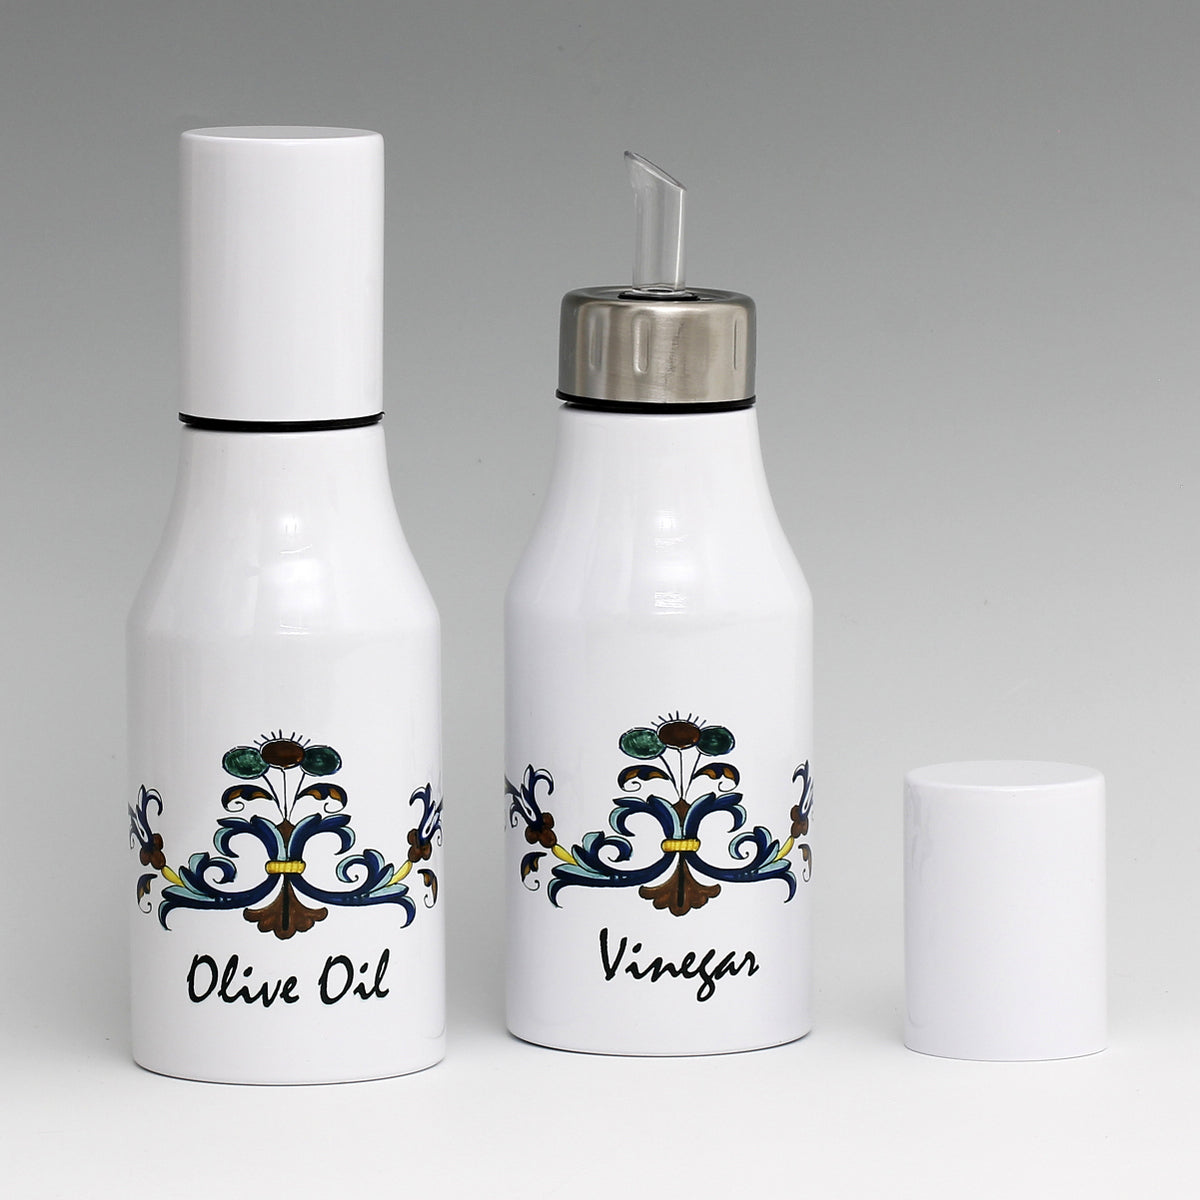 SUBLIMART: Bundle Oil & Vinegar Dispensers with non-drip pourer and dust cover cap (Design 02)